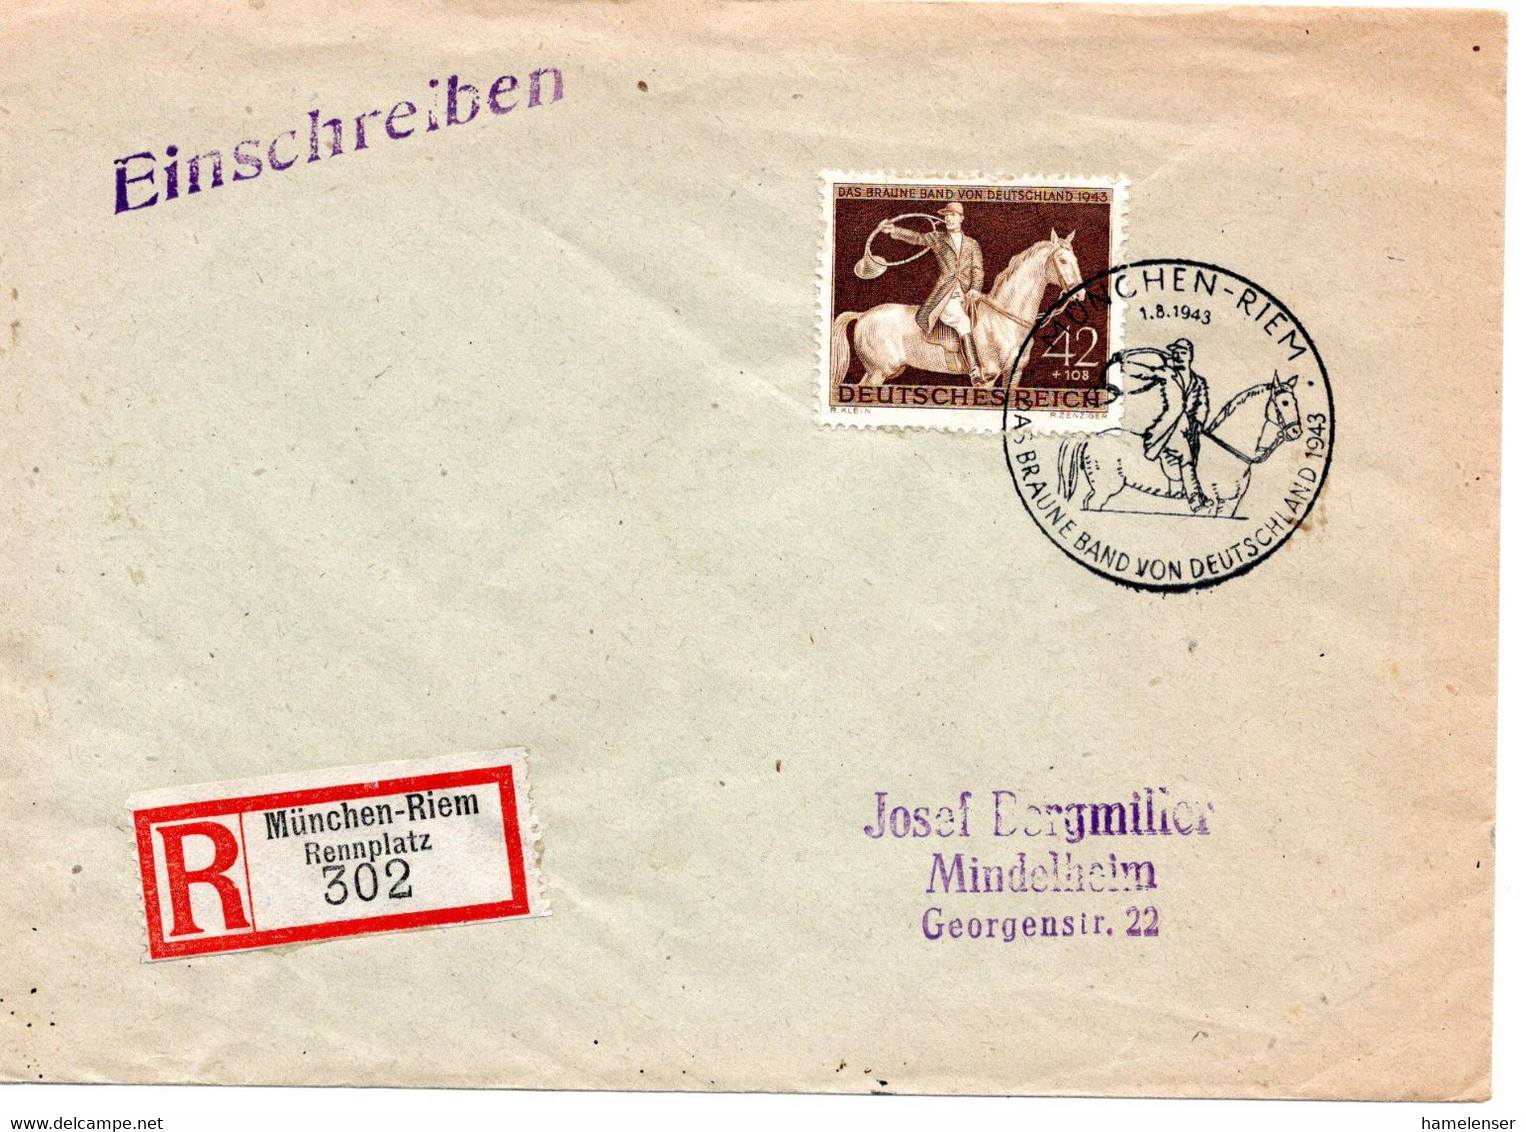 55158 - Deutsches Reich - 1943 - 42Pfg Braunes Band EF A R-Bf SoStpl MUENCHEN-RIEM - DAS BRAUNE BAND ... -> MINDELHEIM - Ippica